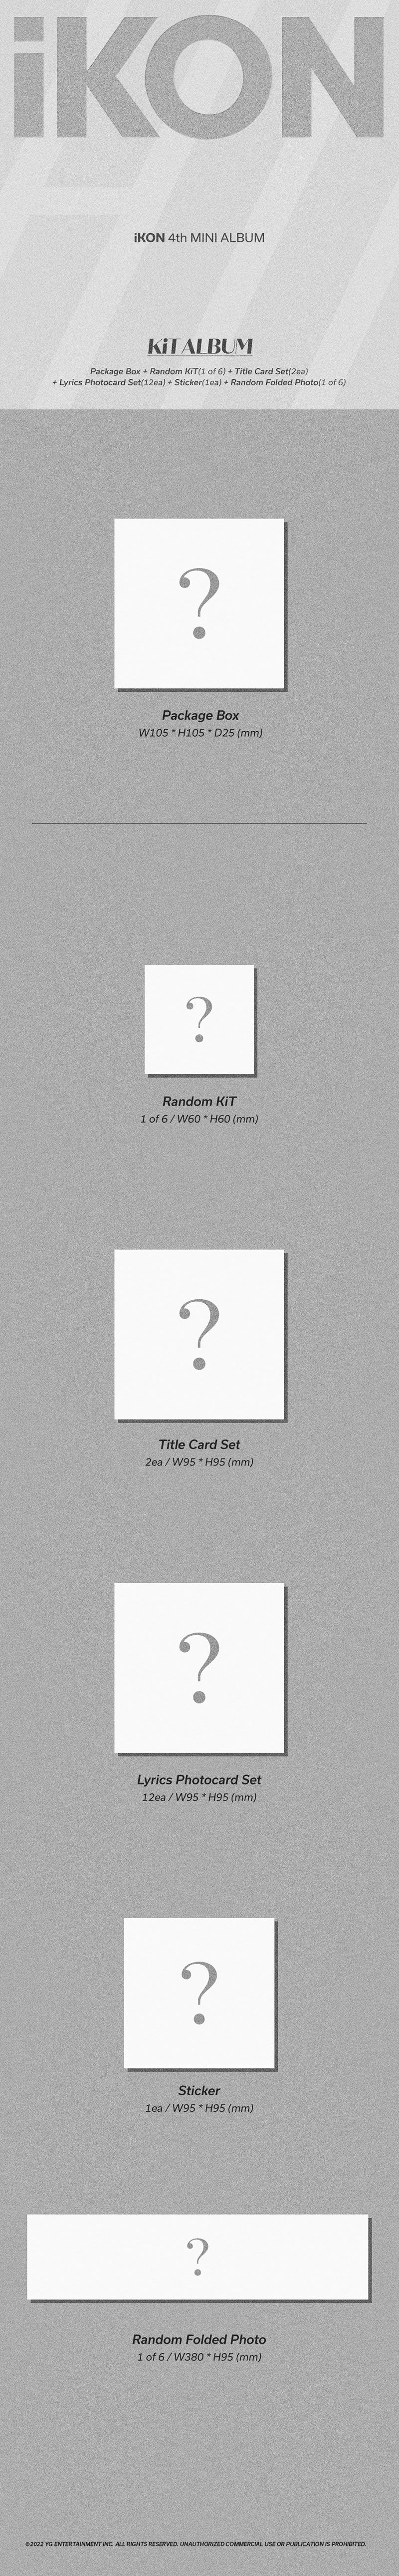 iKON – FLASHBACK (4. Mini-Album) KiT